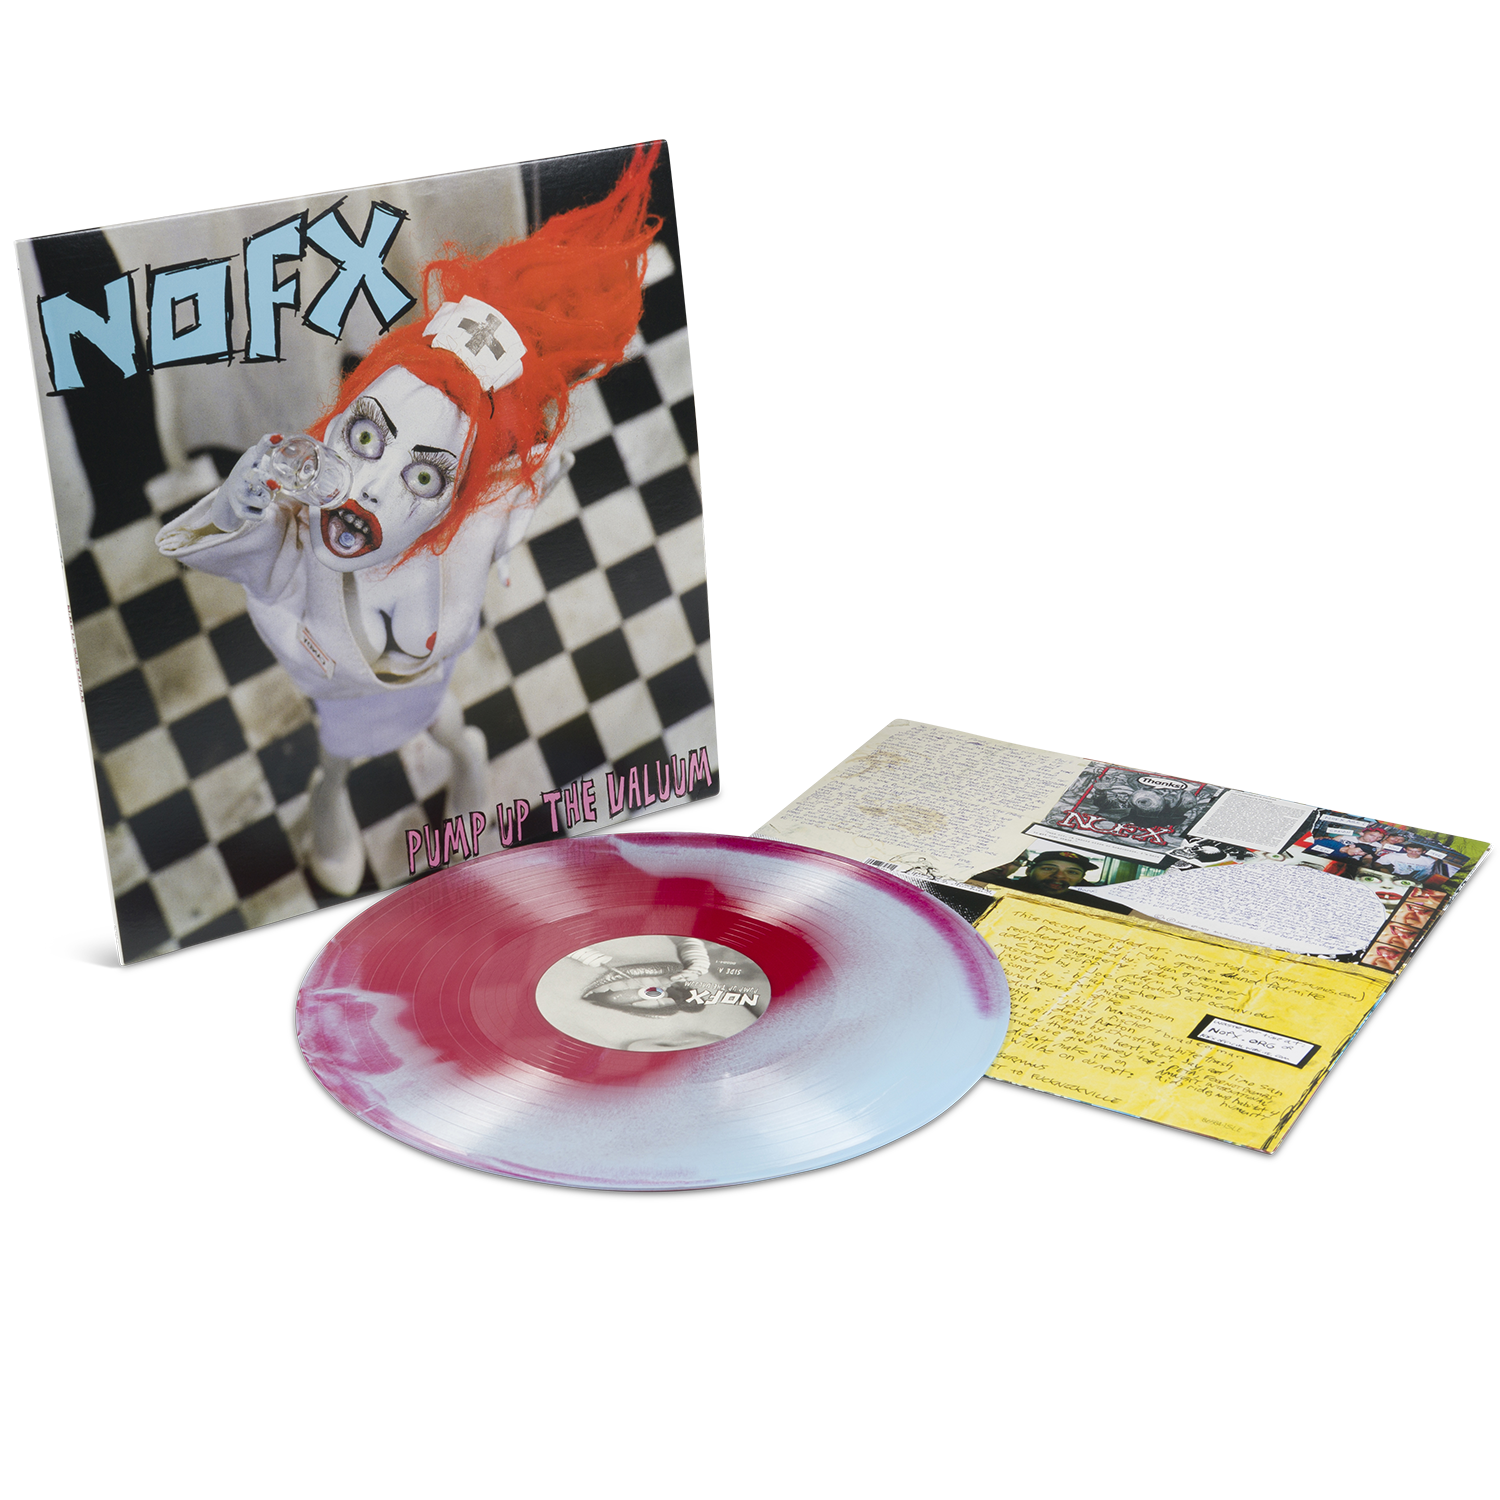 Pump Up The Valuum Vinyl – NOFX